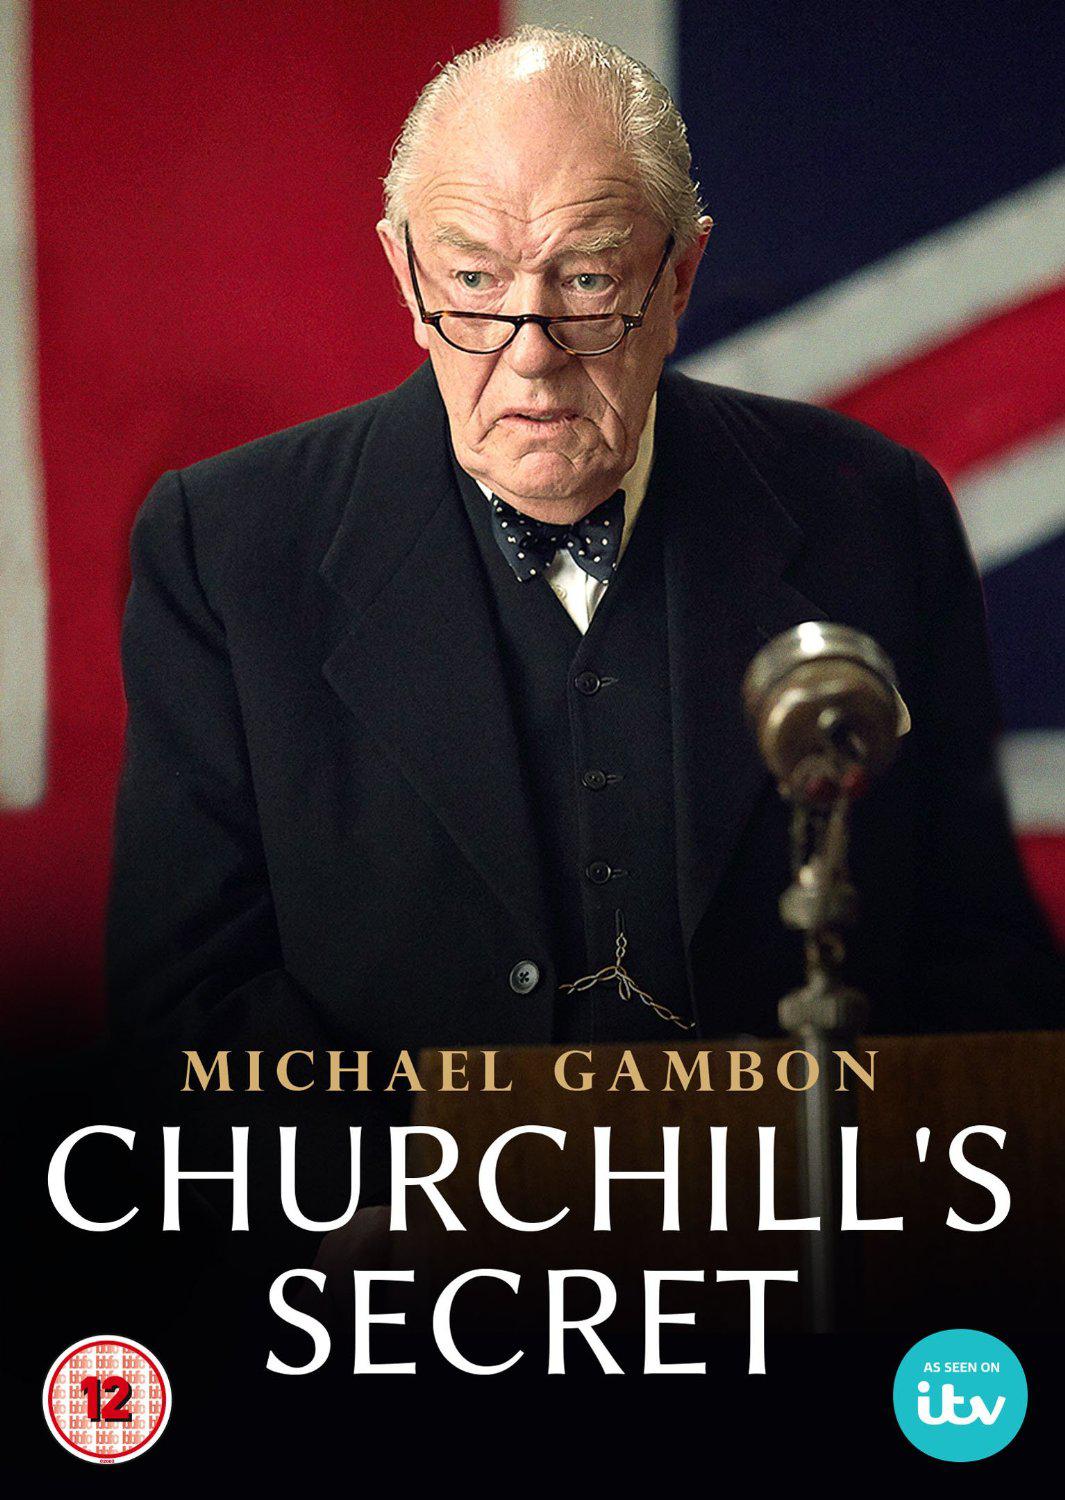 Nonton film Churchills Secret layarkaca21 indoxx1 ganool online streaming terbaru